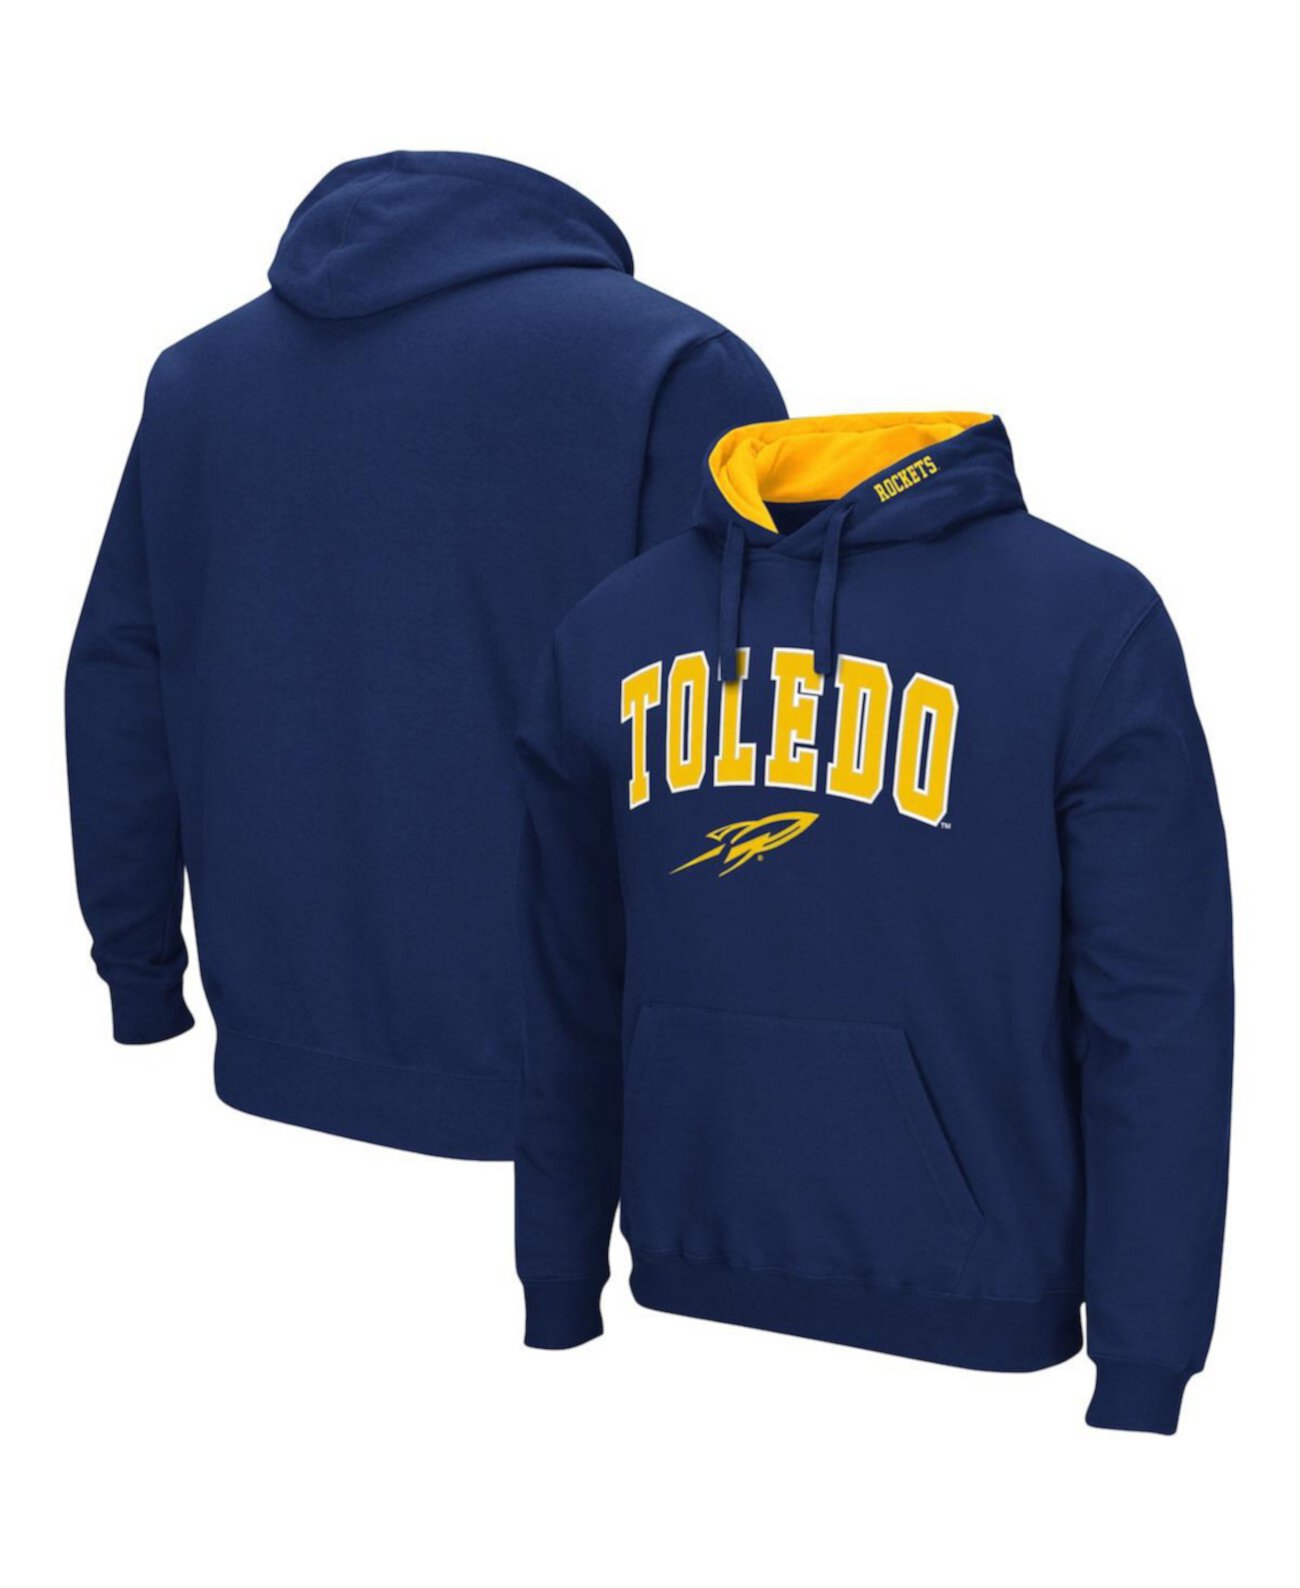 Мужская темно-синяя толстовка с капюшоном Toledo Rockets Arch и логотипом Colosseum